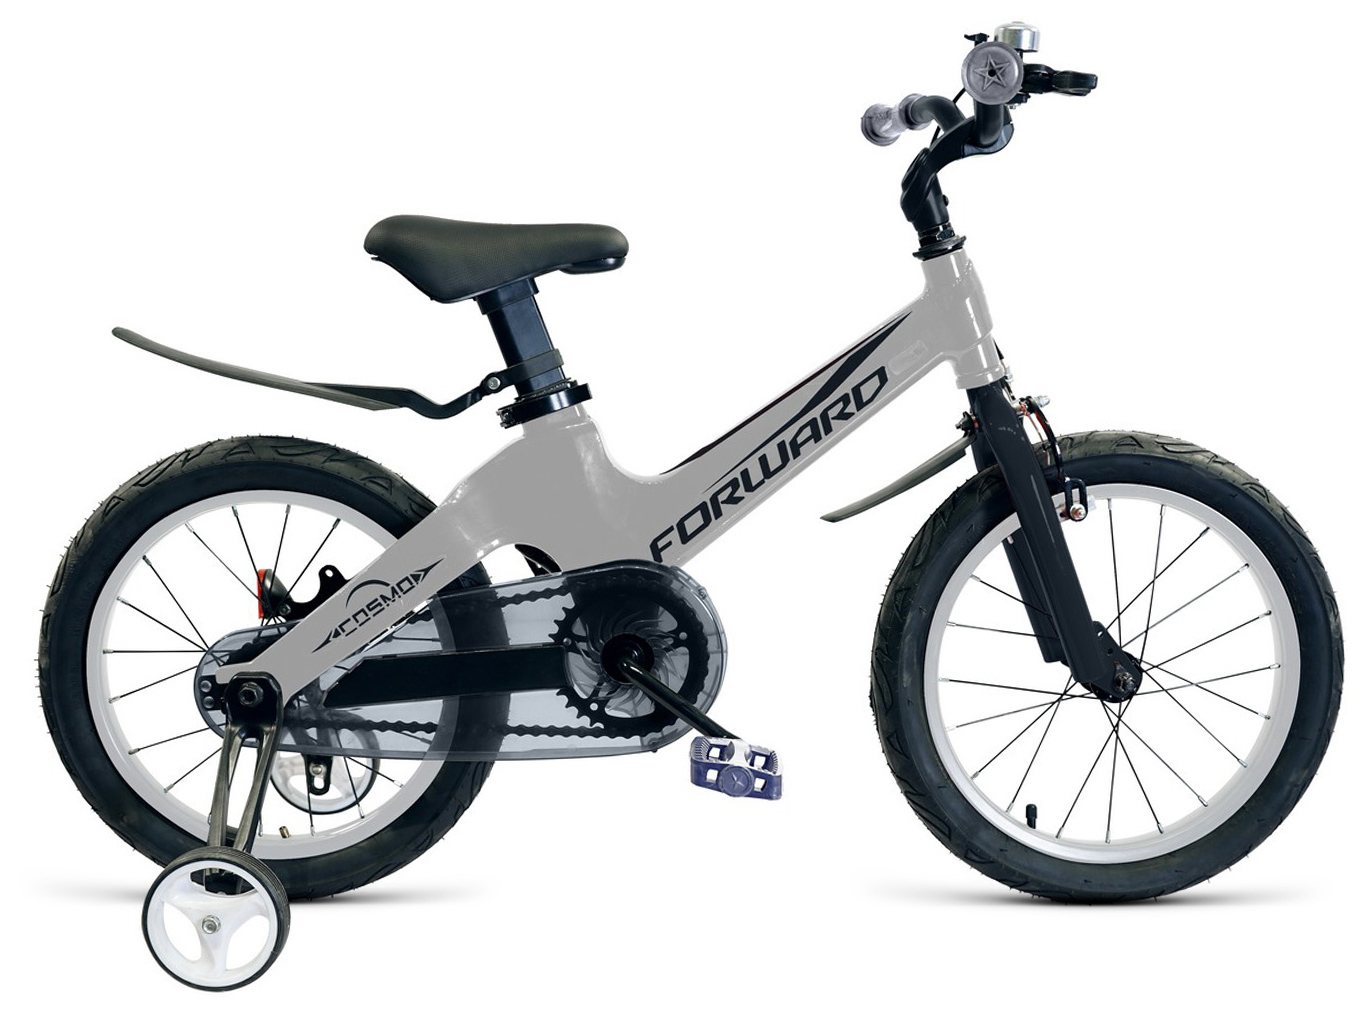  Велосипед Forward Cosmo 16 2019